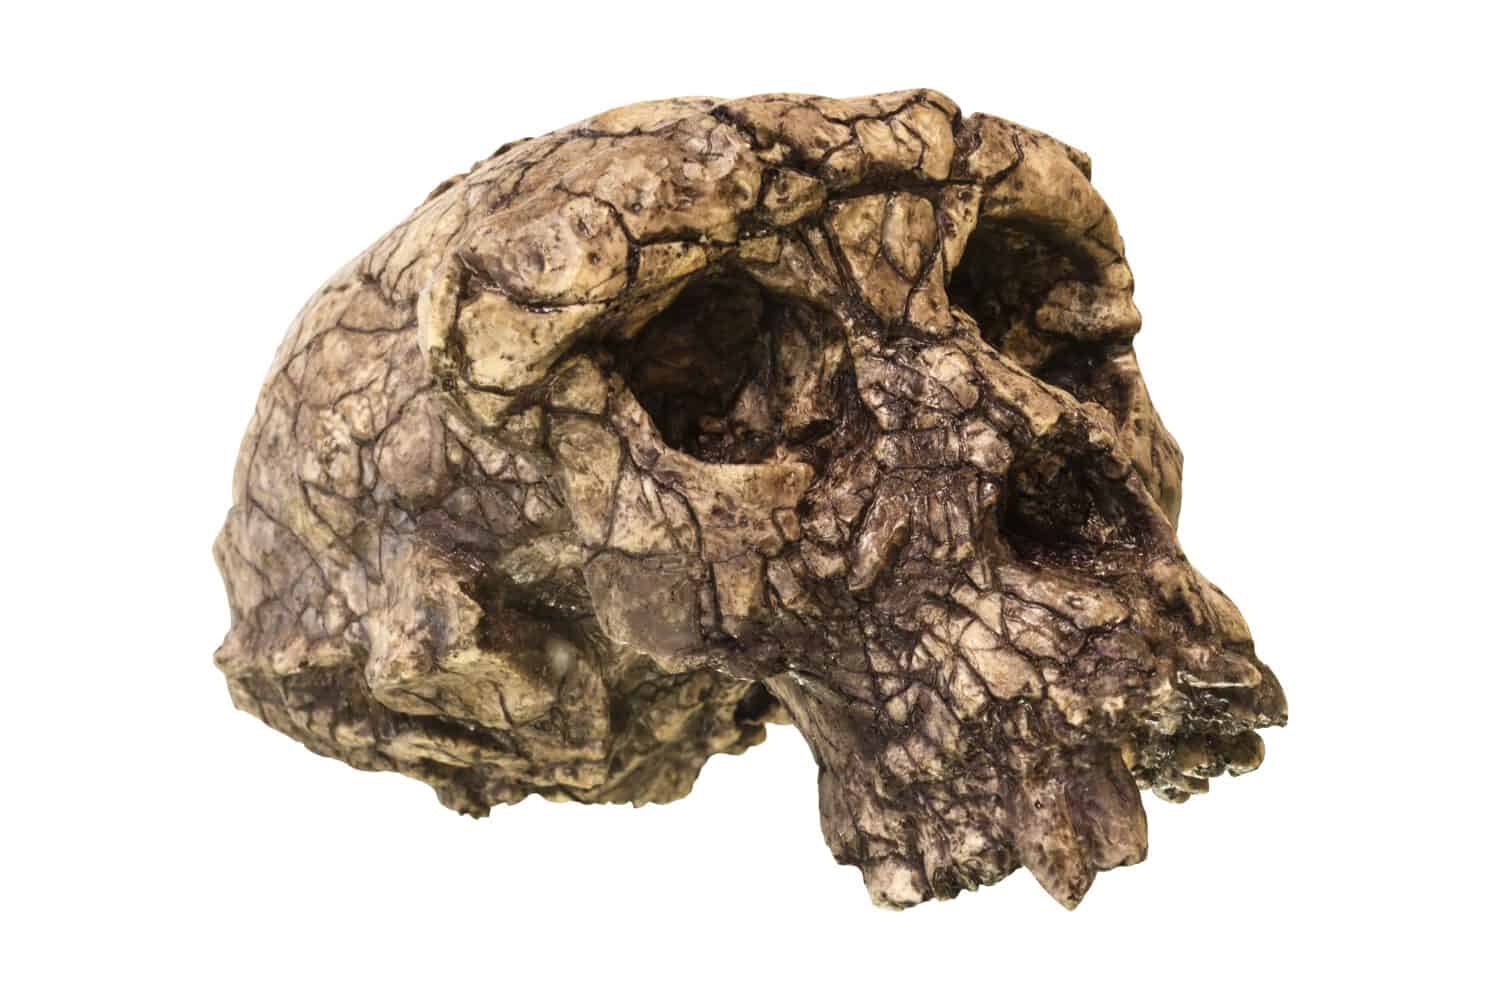 Una ricostruzione del Sahelanthropus, uno dei più antichi fossili umani conosciuti, risalente a oltre sette milioni di anni fa